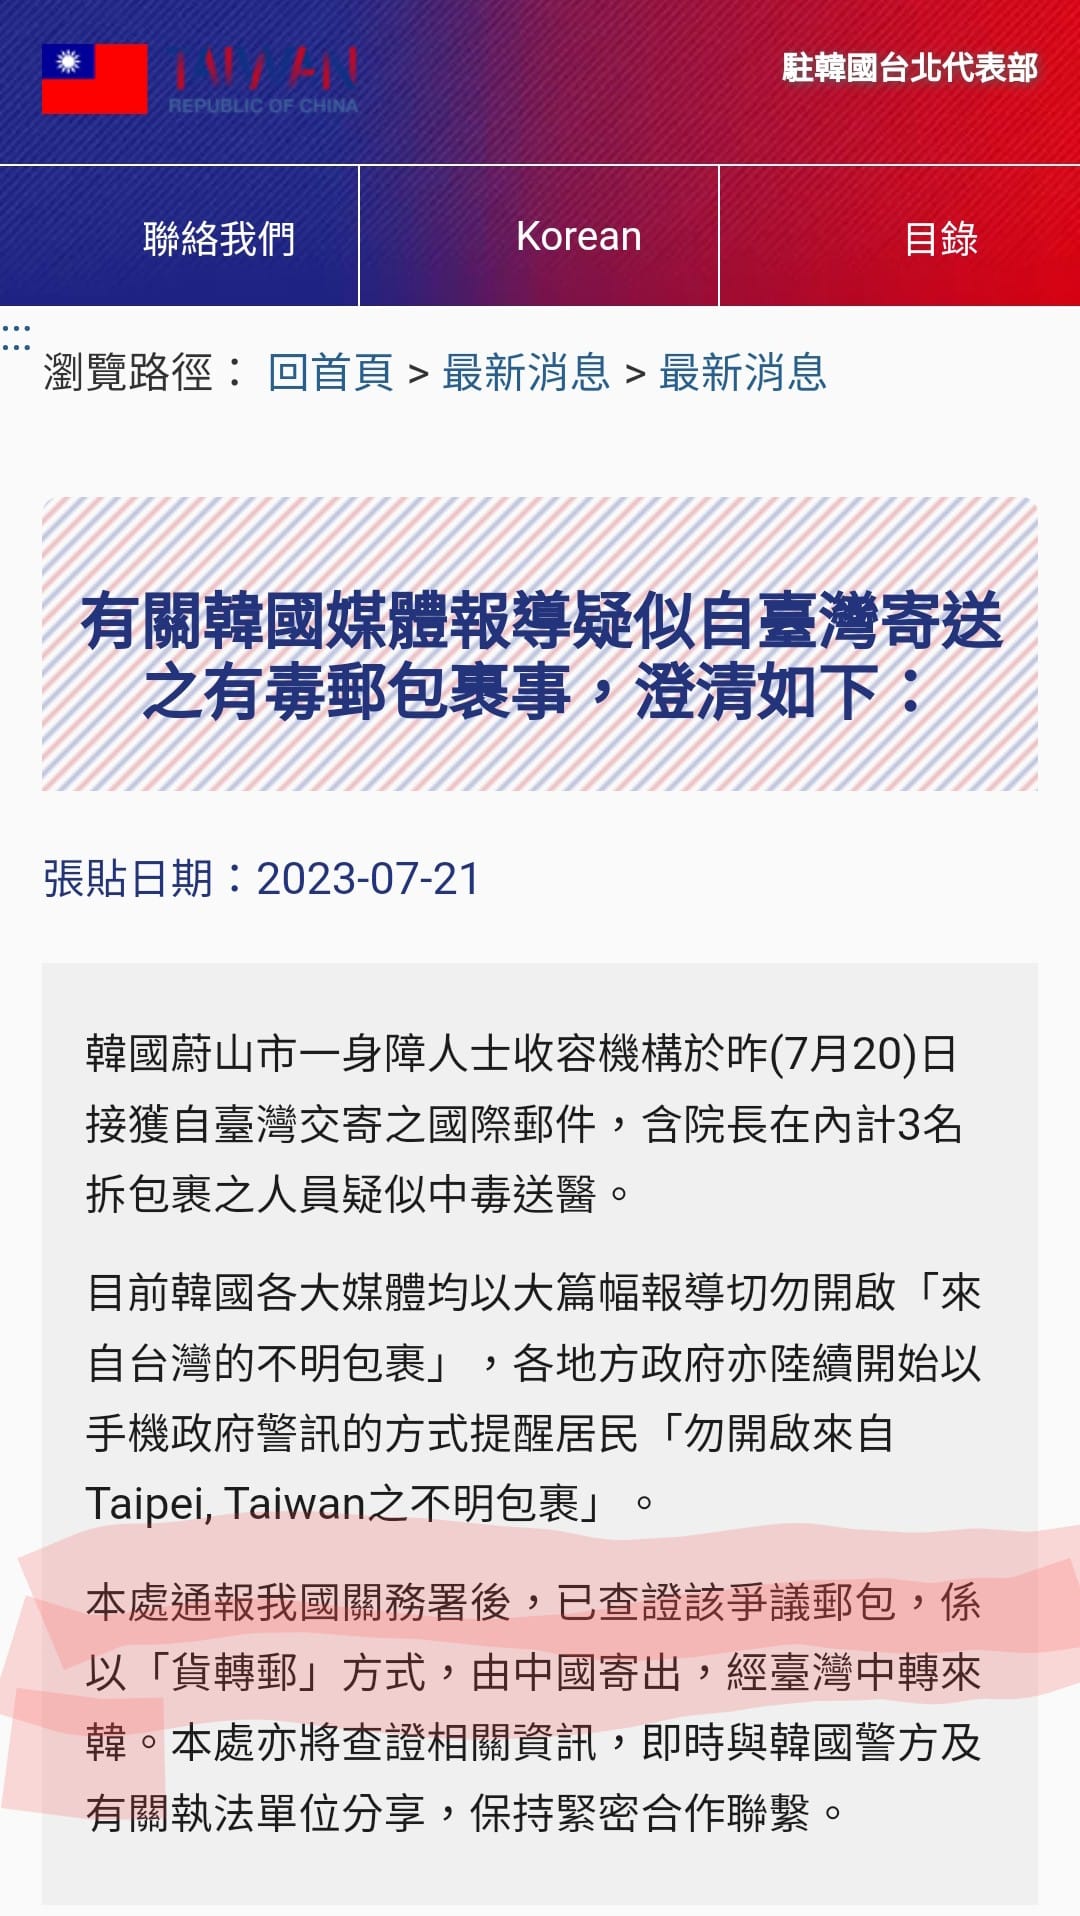 有毒貨件由中國寄出經台灣中轉至韓國